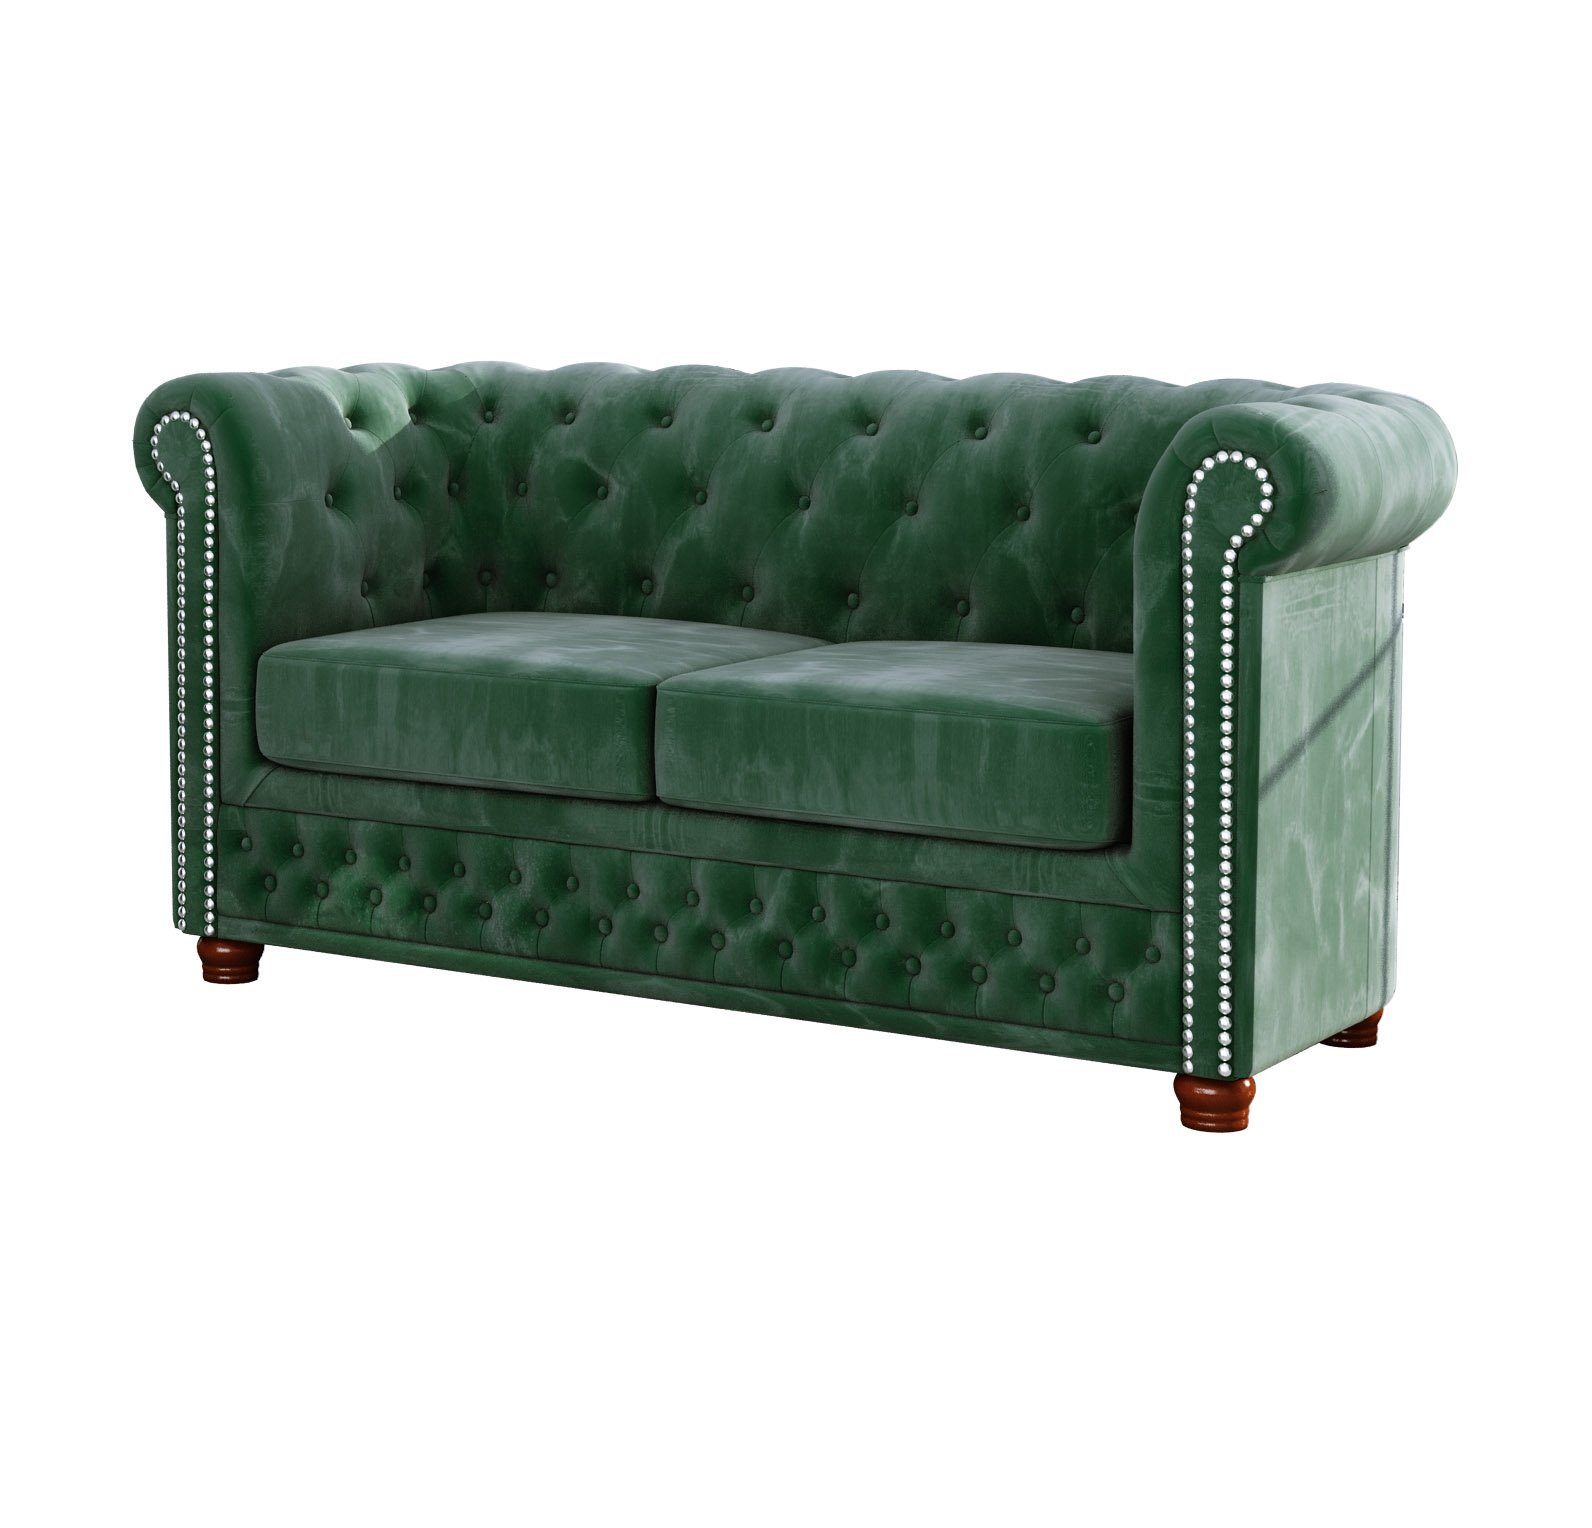 1x Sessel), Chesterfield Wellenfederung Flasche (1x 2-Sitzer-Sofa, 3+2+1, grün 1x Leeds S-Style Polstergarnitur 3-Sitzer-Sofa, mit Möbel